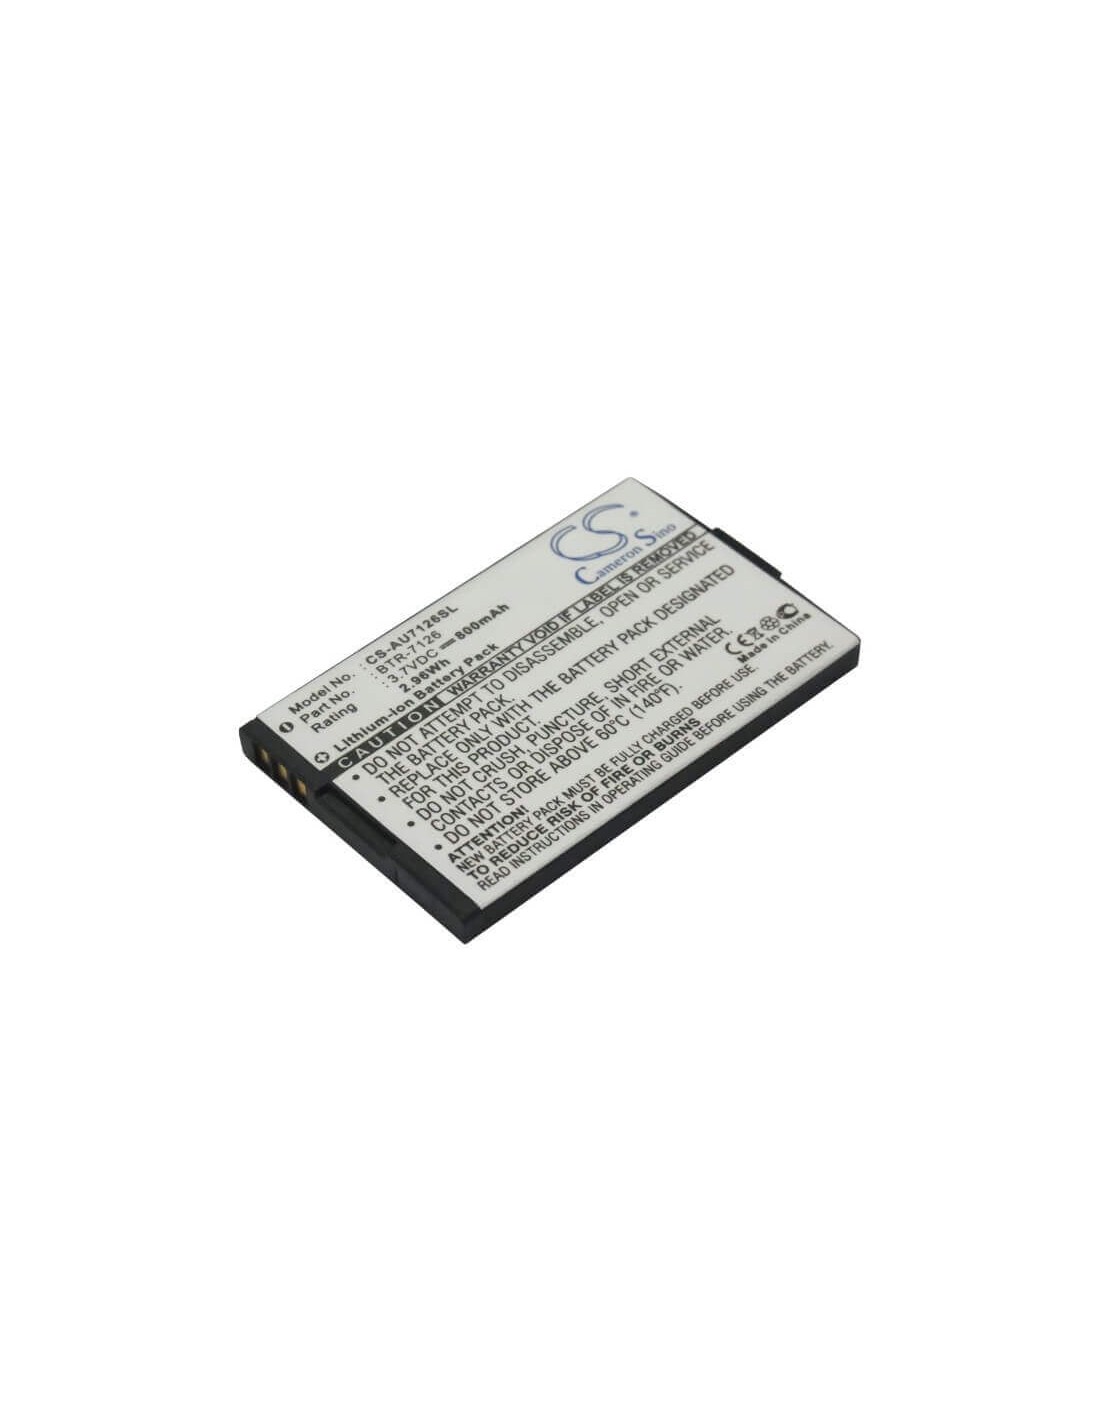 Battery for Audiovox CDM-7126, CDM-7176, CDM-8074 3.7V, 800mAh - 2.96Wh